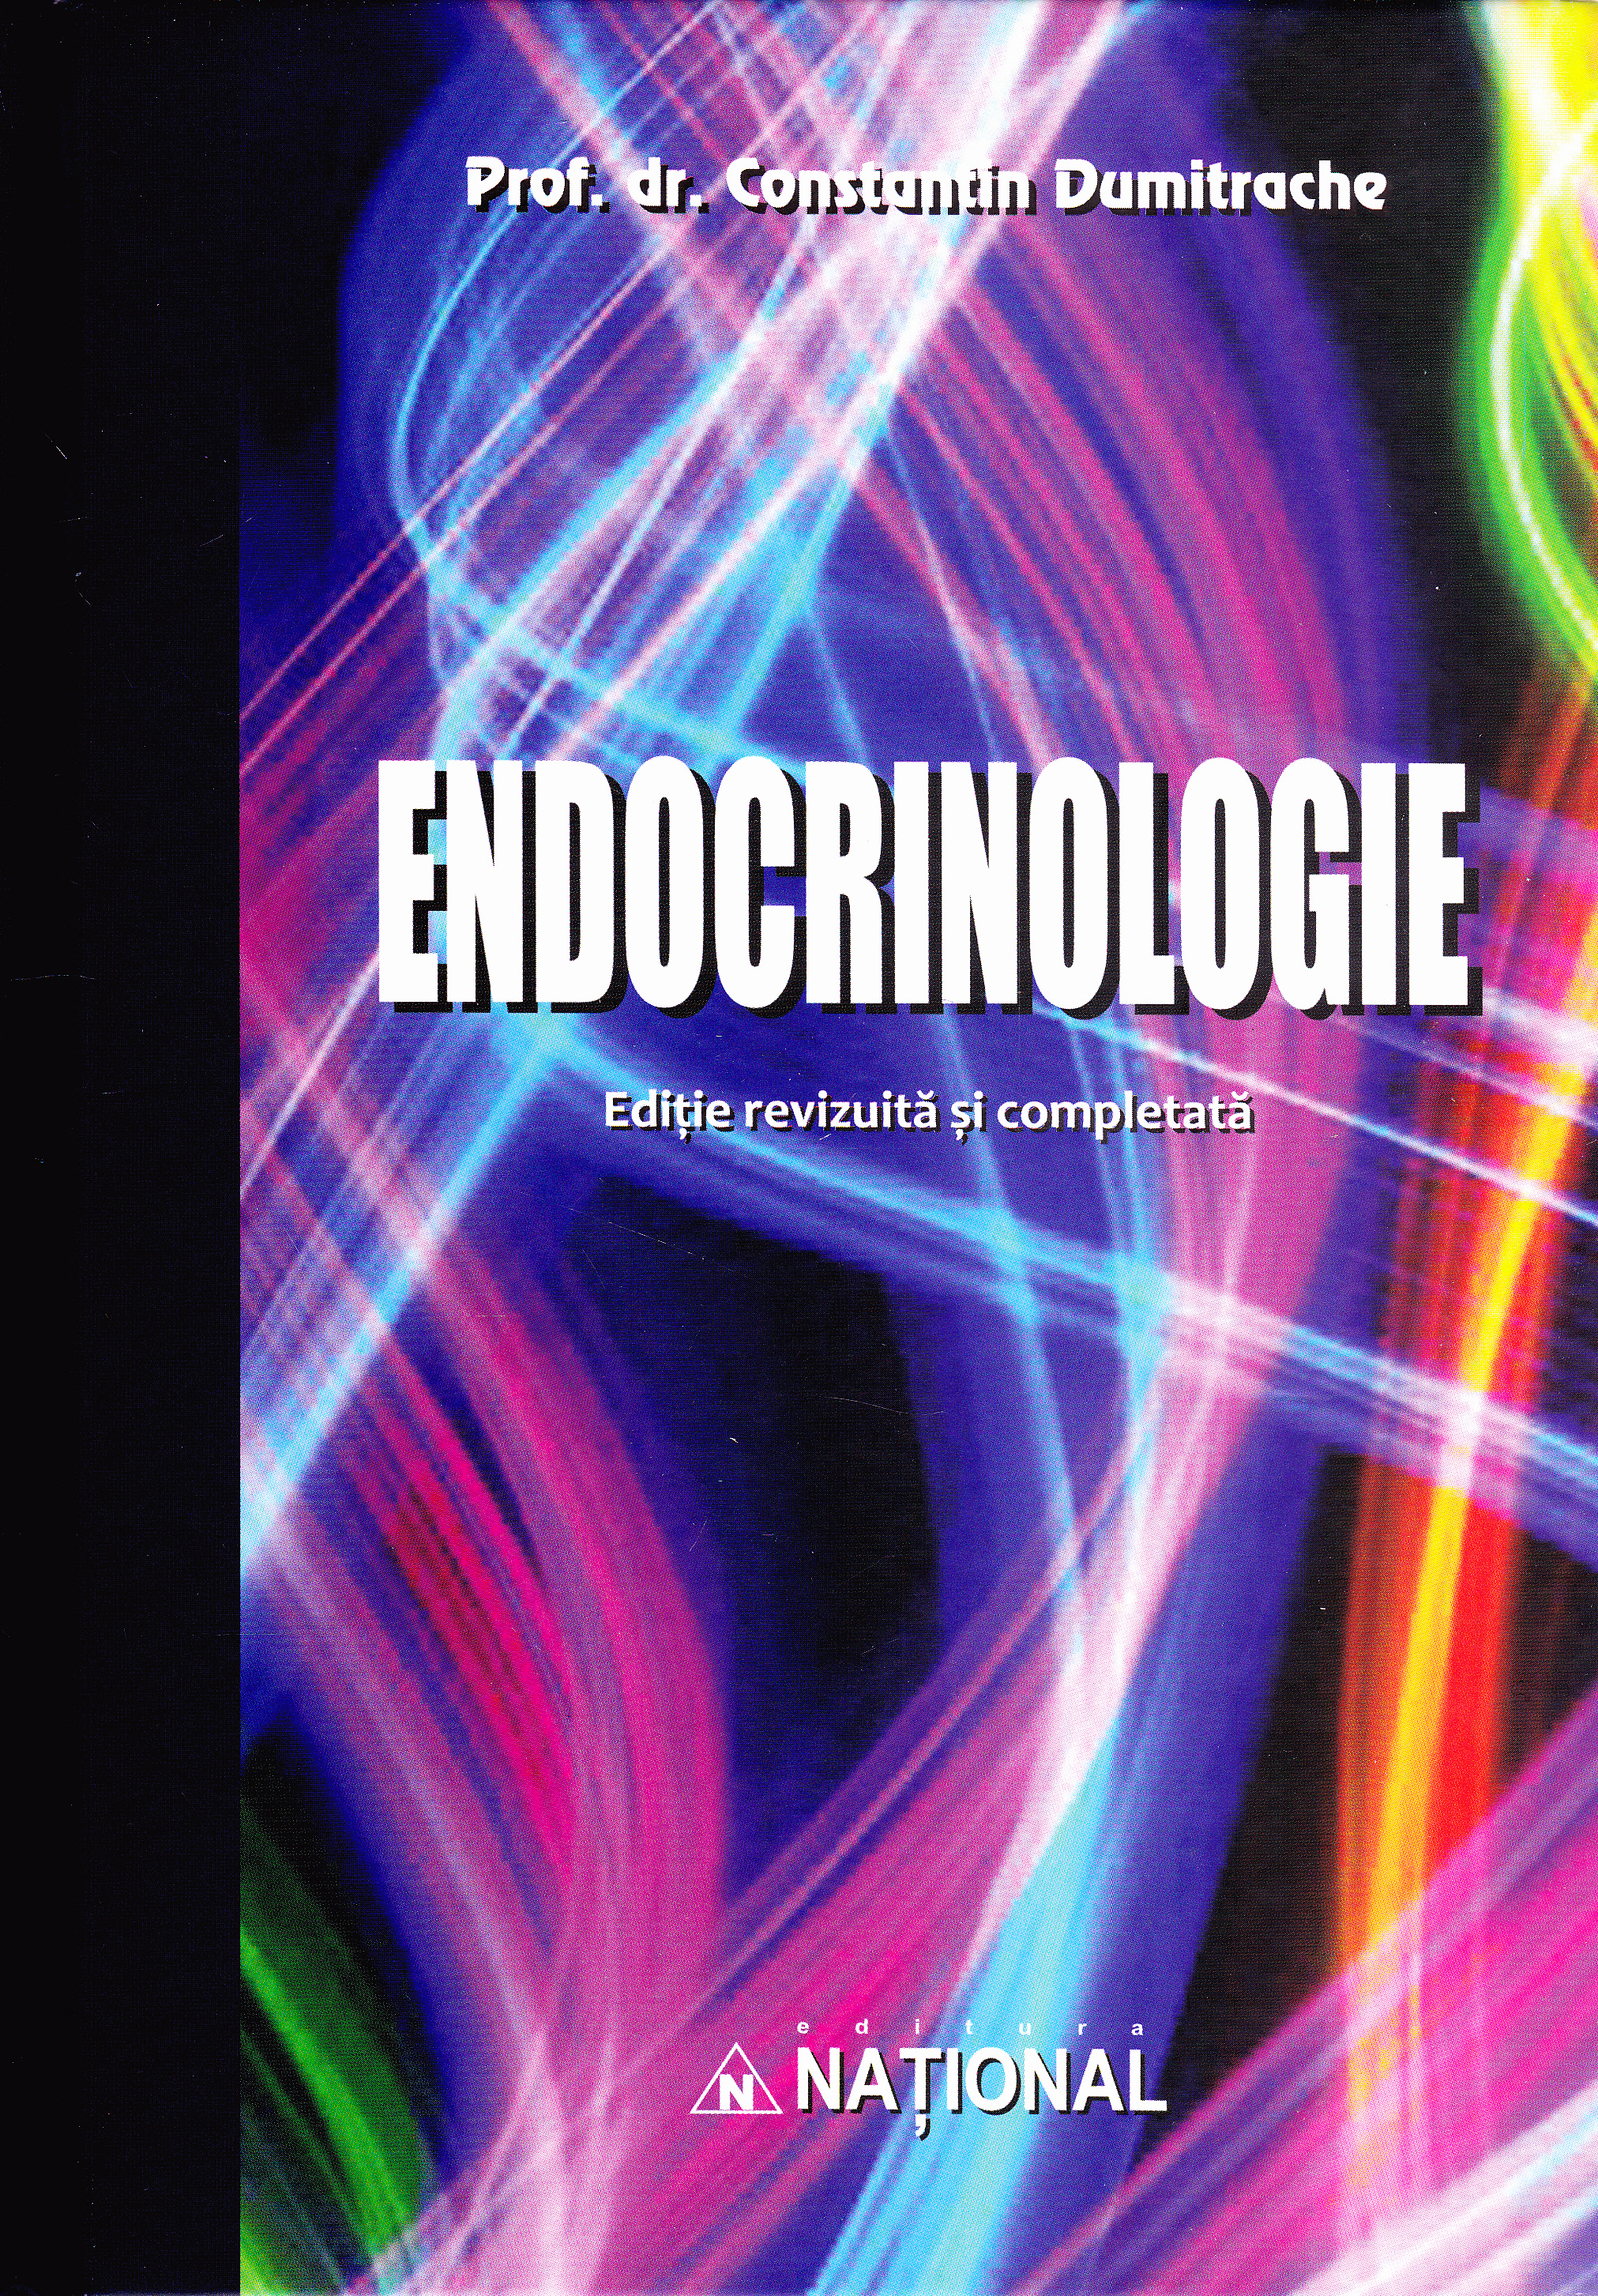 Endocrinologie ed.6 - Constantin Dumitrache